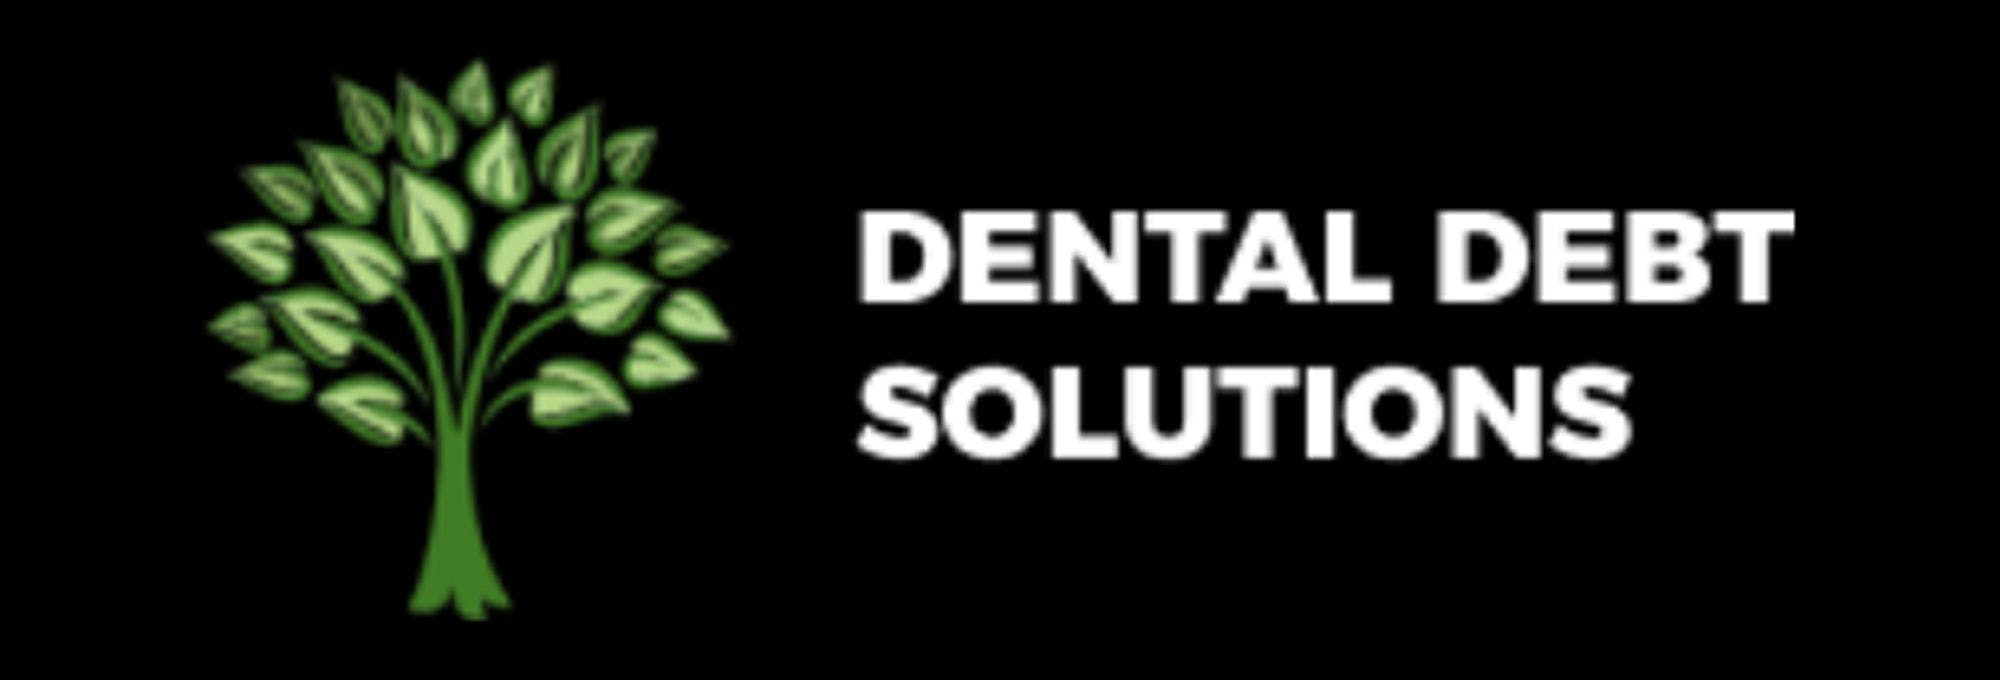 Dental and Medical Student Debt Refinancing Platform “Dental Debt Solutions” Live Now